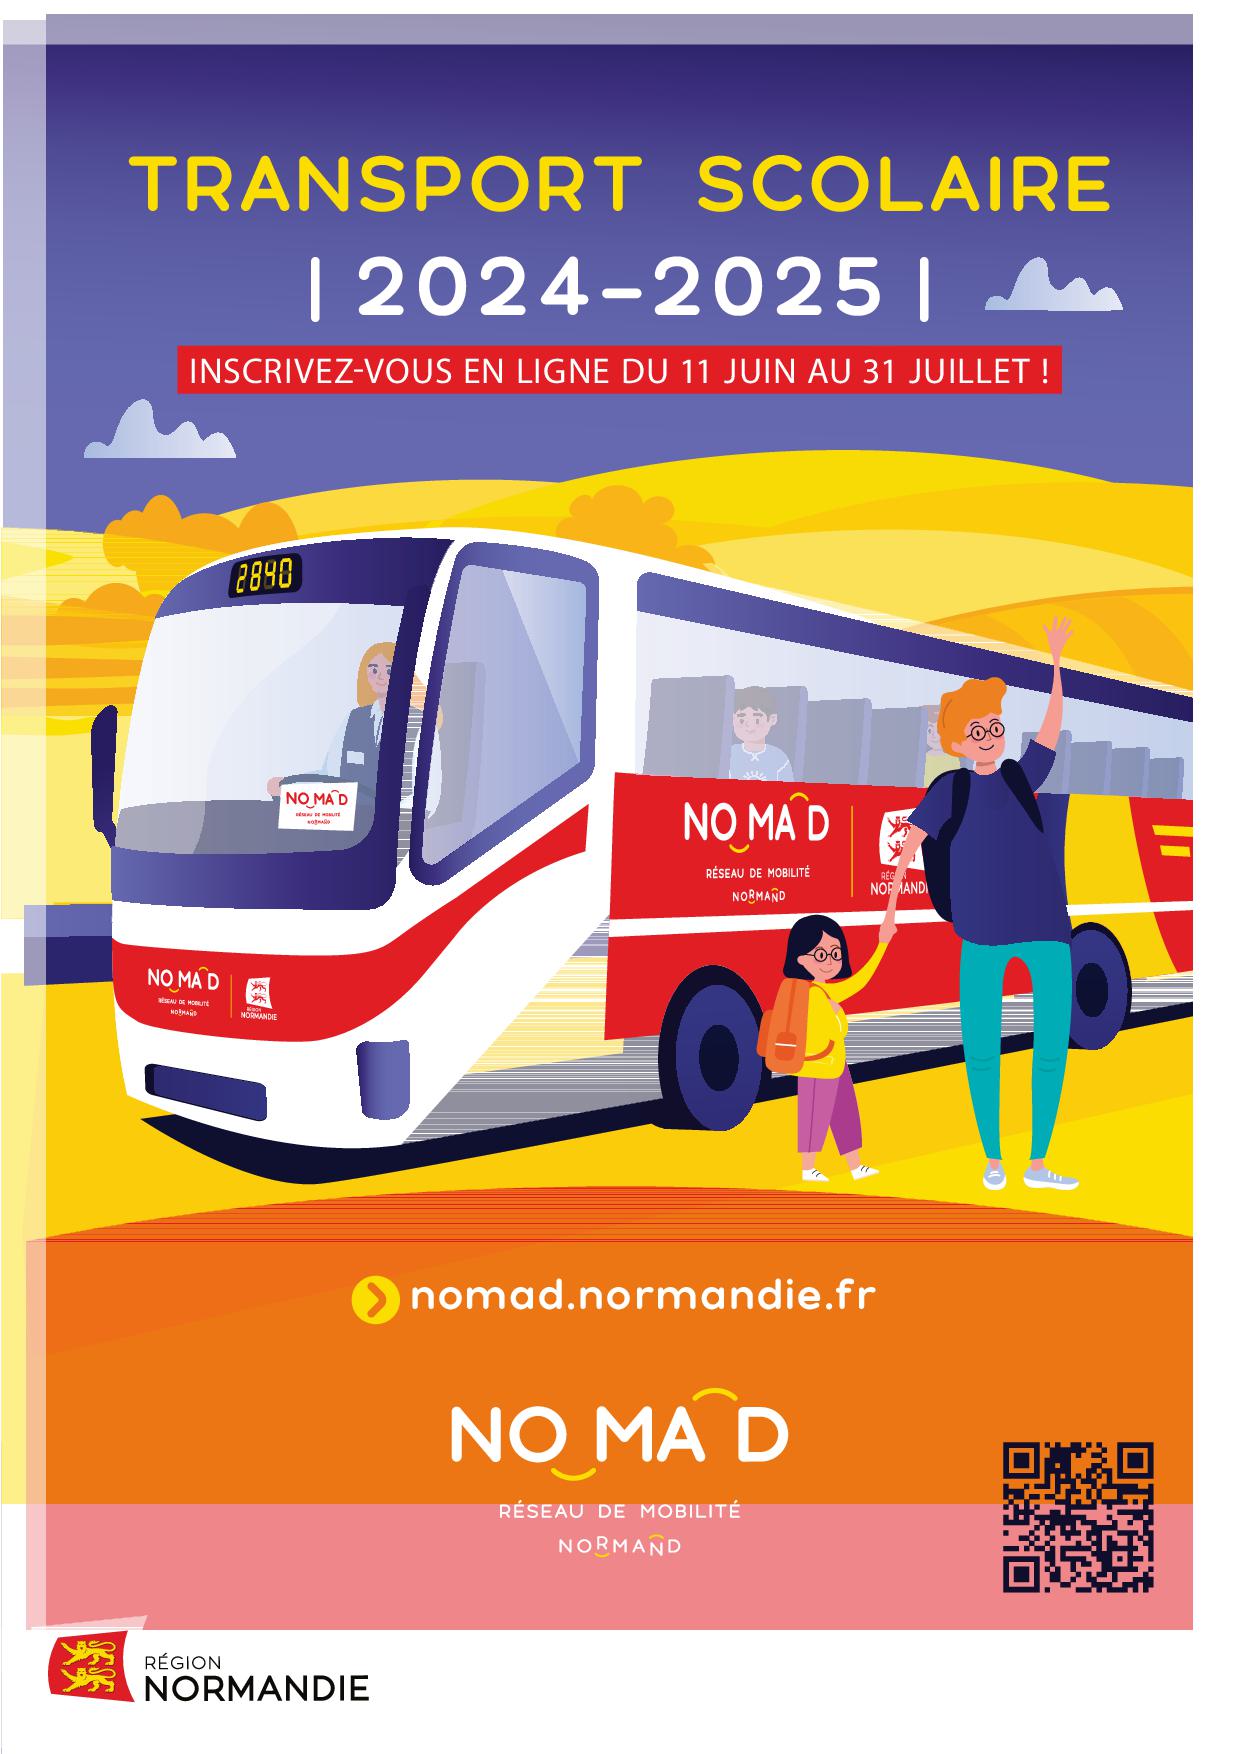 FLYER_Région Normandie Transport scolaire_2024 2025.jpg